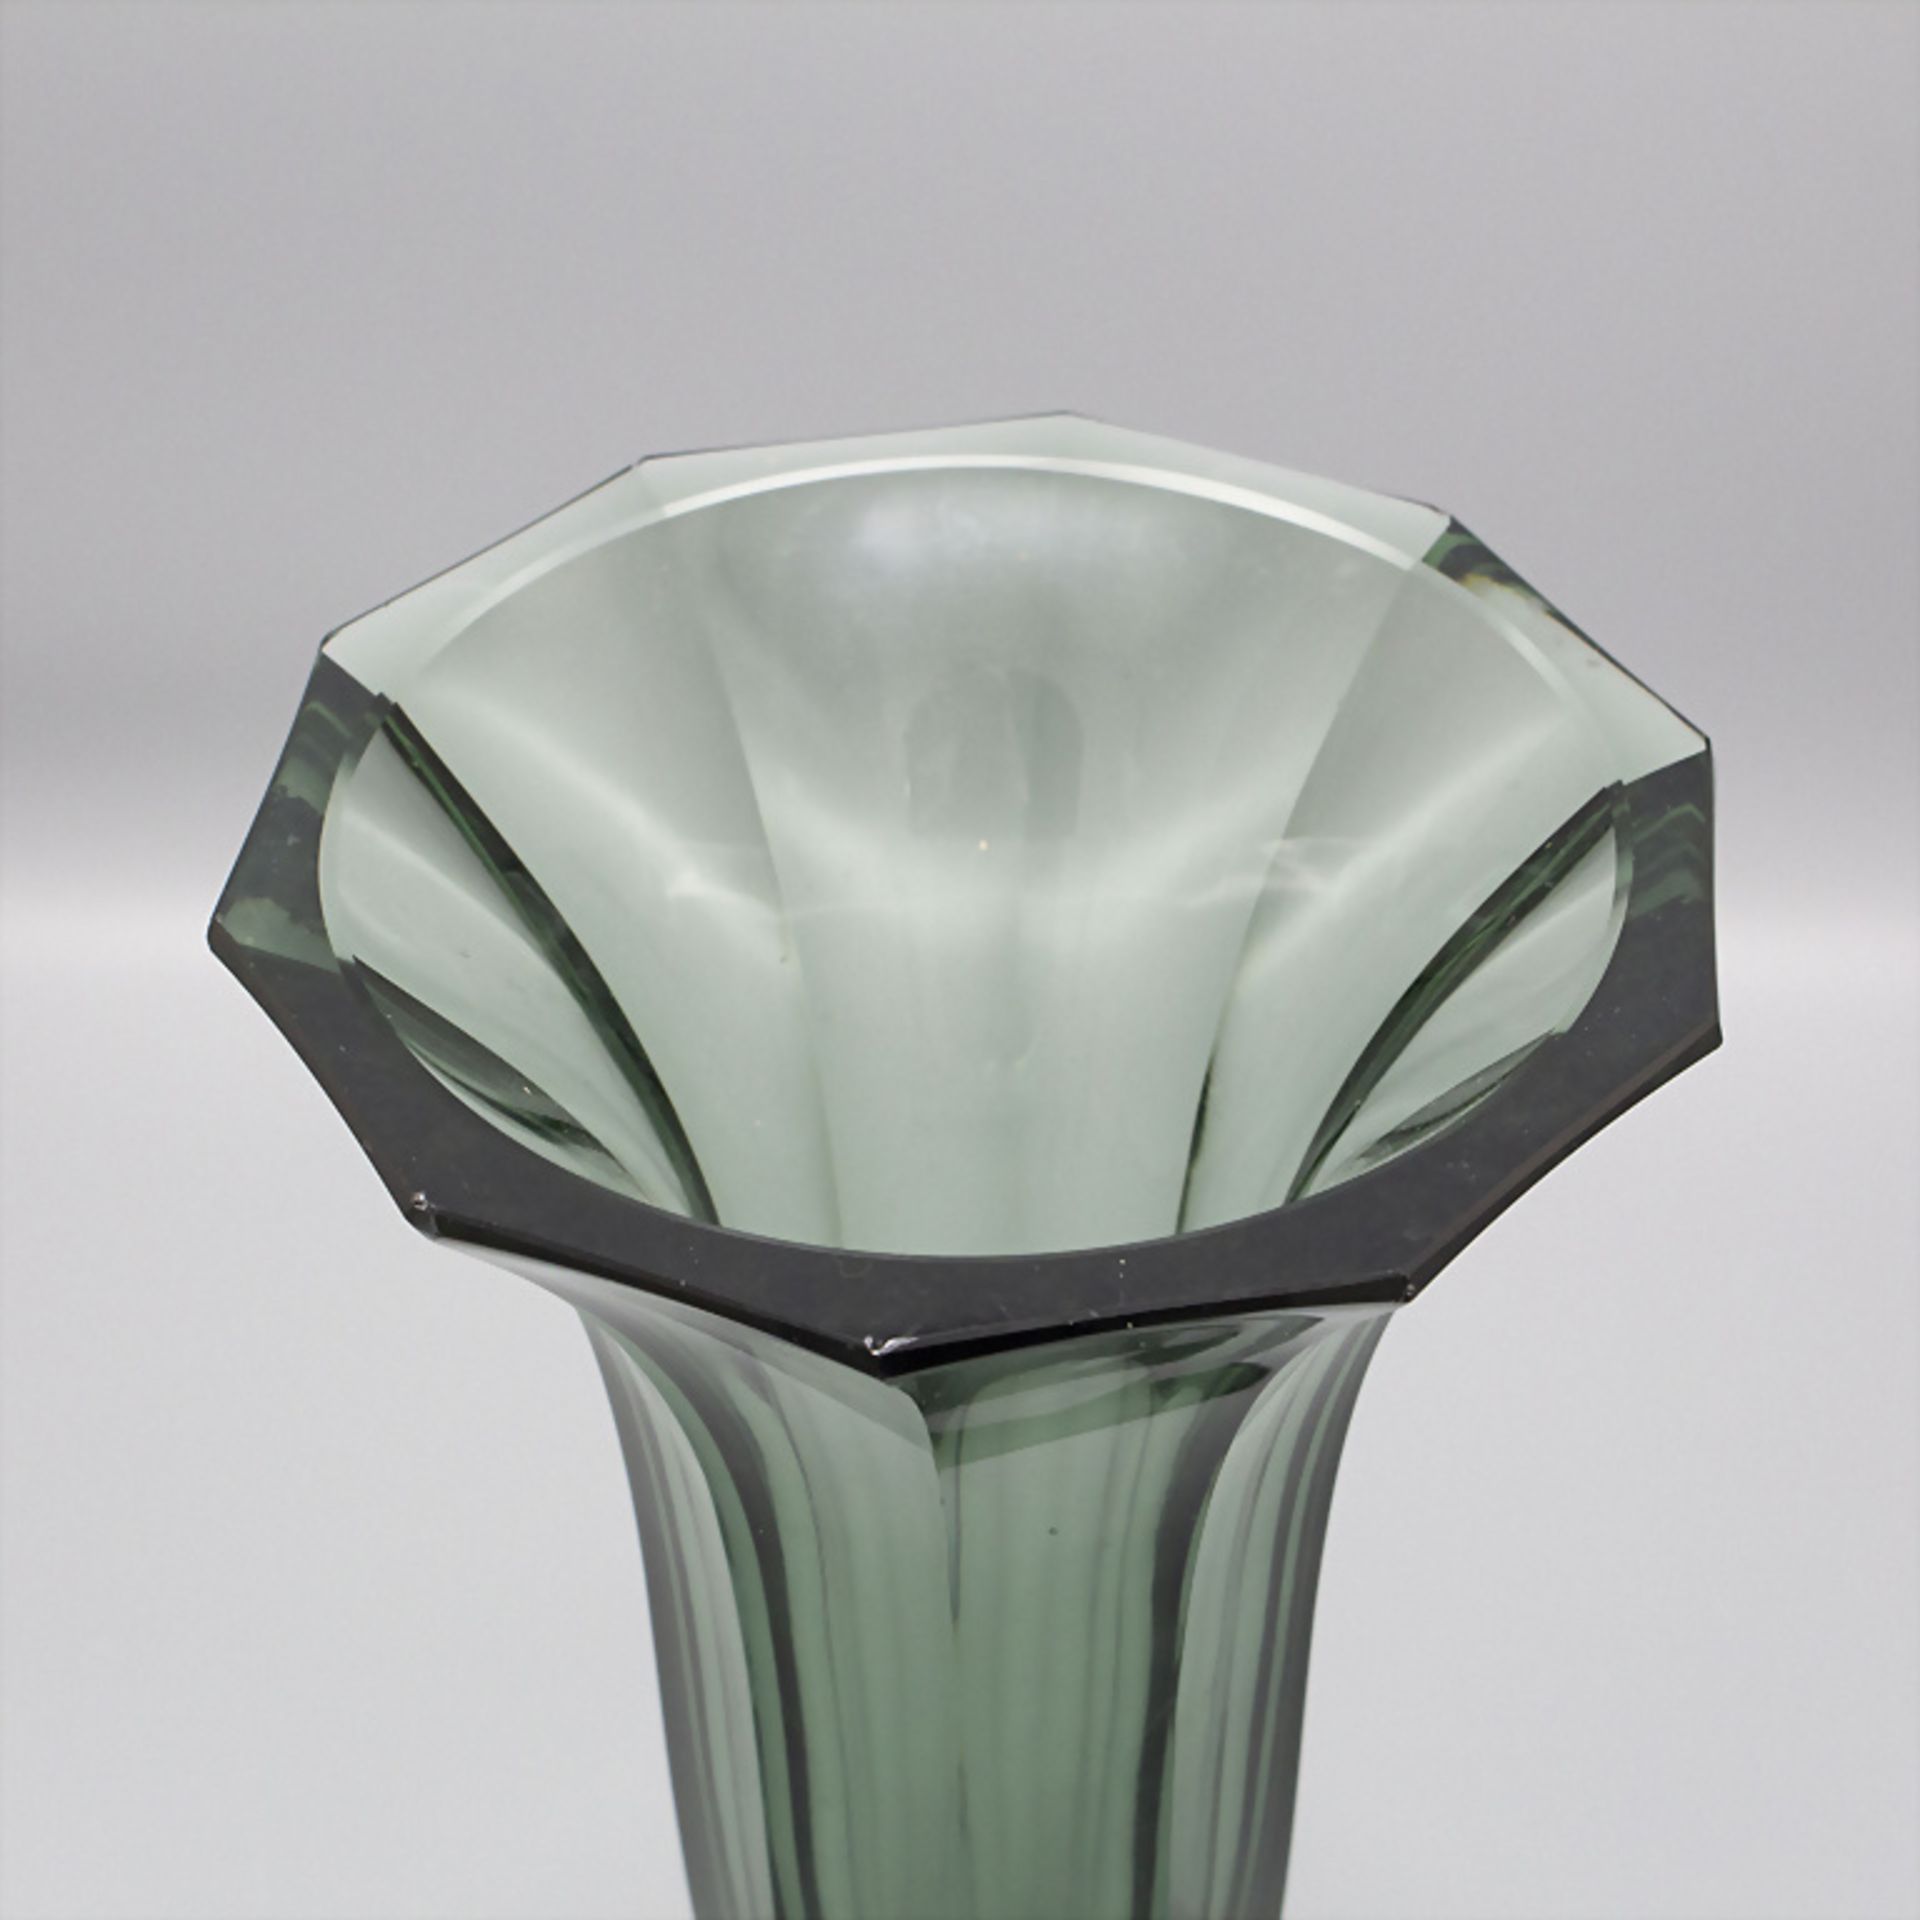 Vase / A glass vase, wohl Moser, Karlsbad, 1930er Jahre - Image 2 of 3